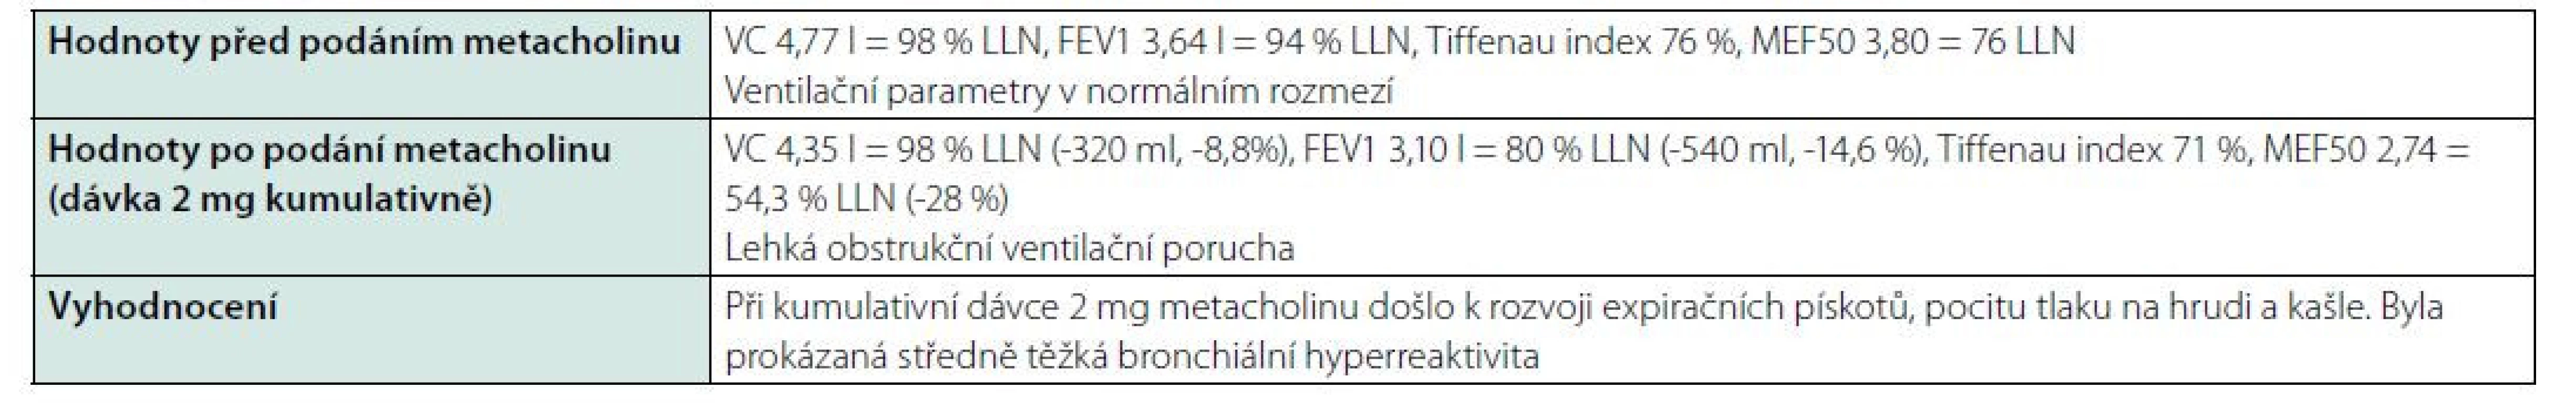 Výsledky bronchokonstrikčního testu dne 30. 6. 2020